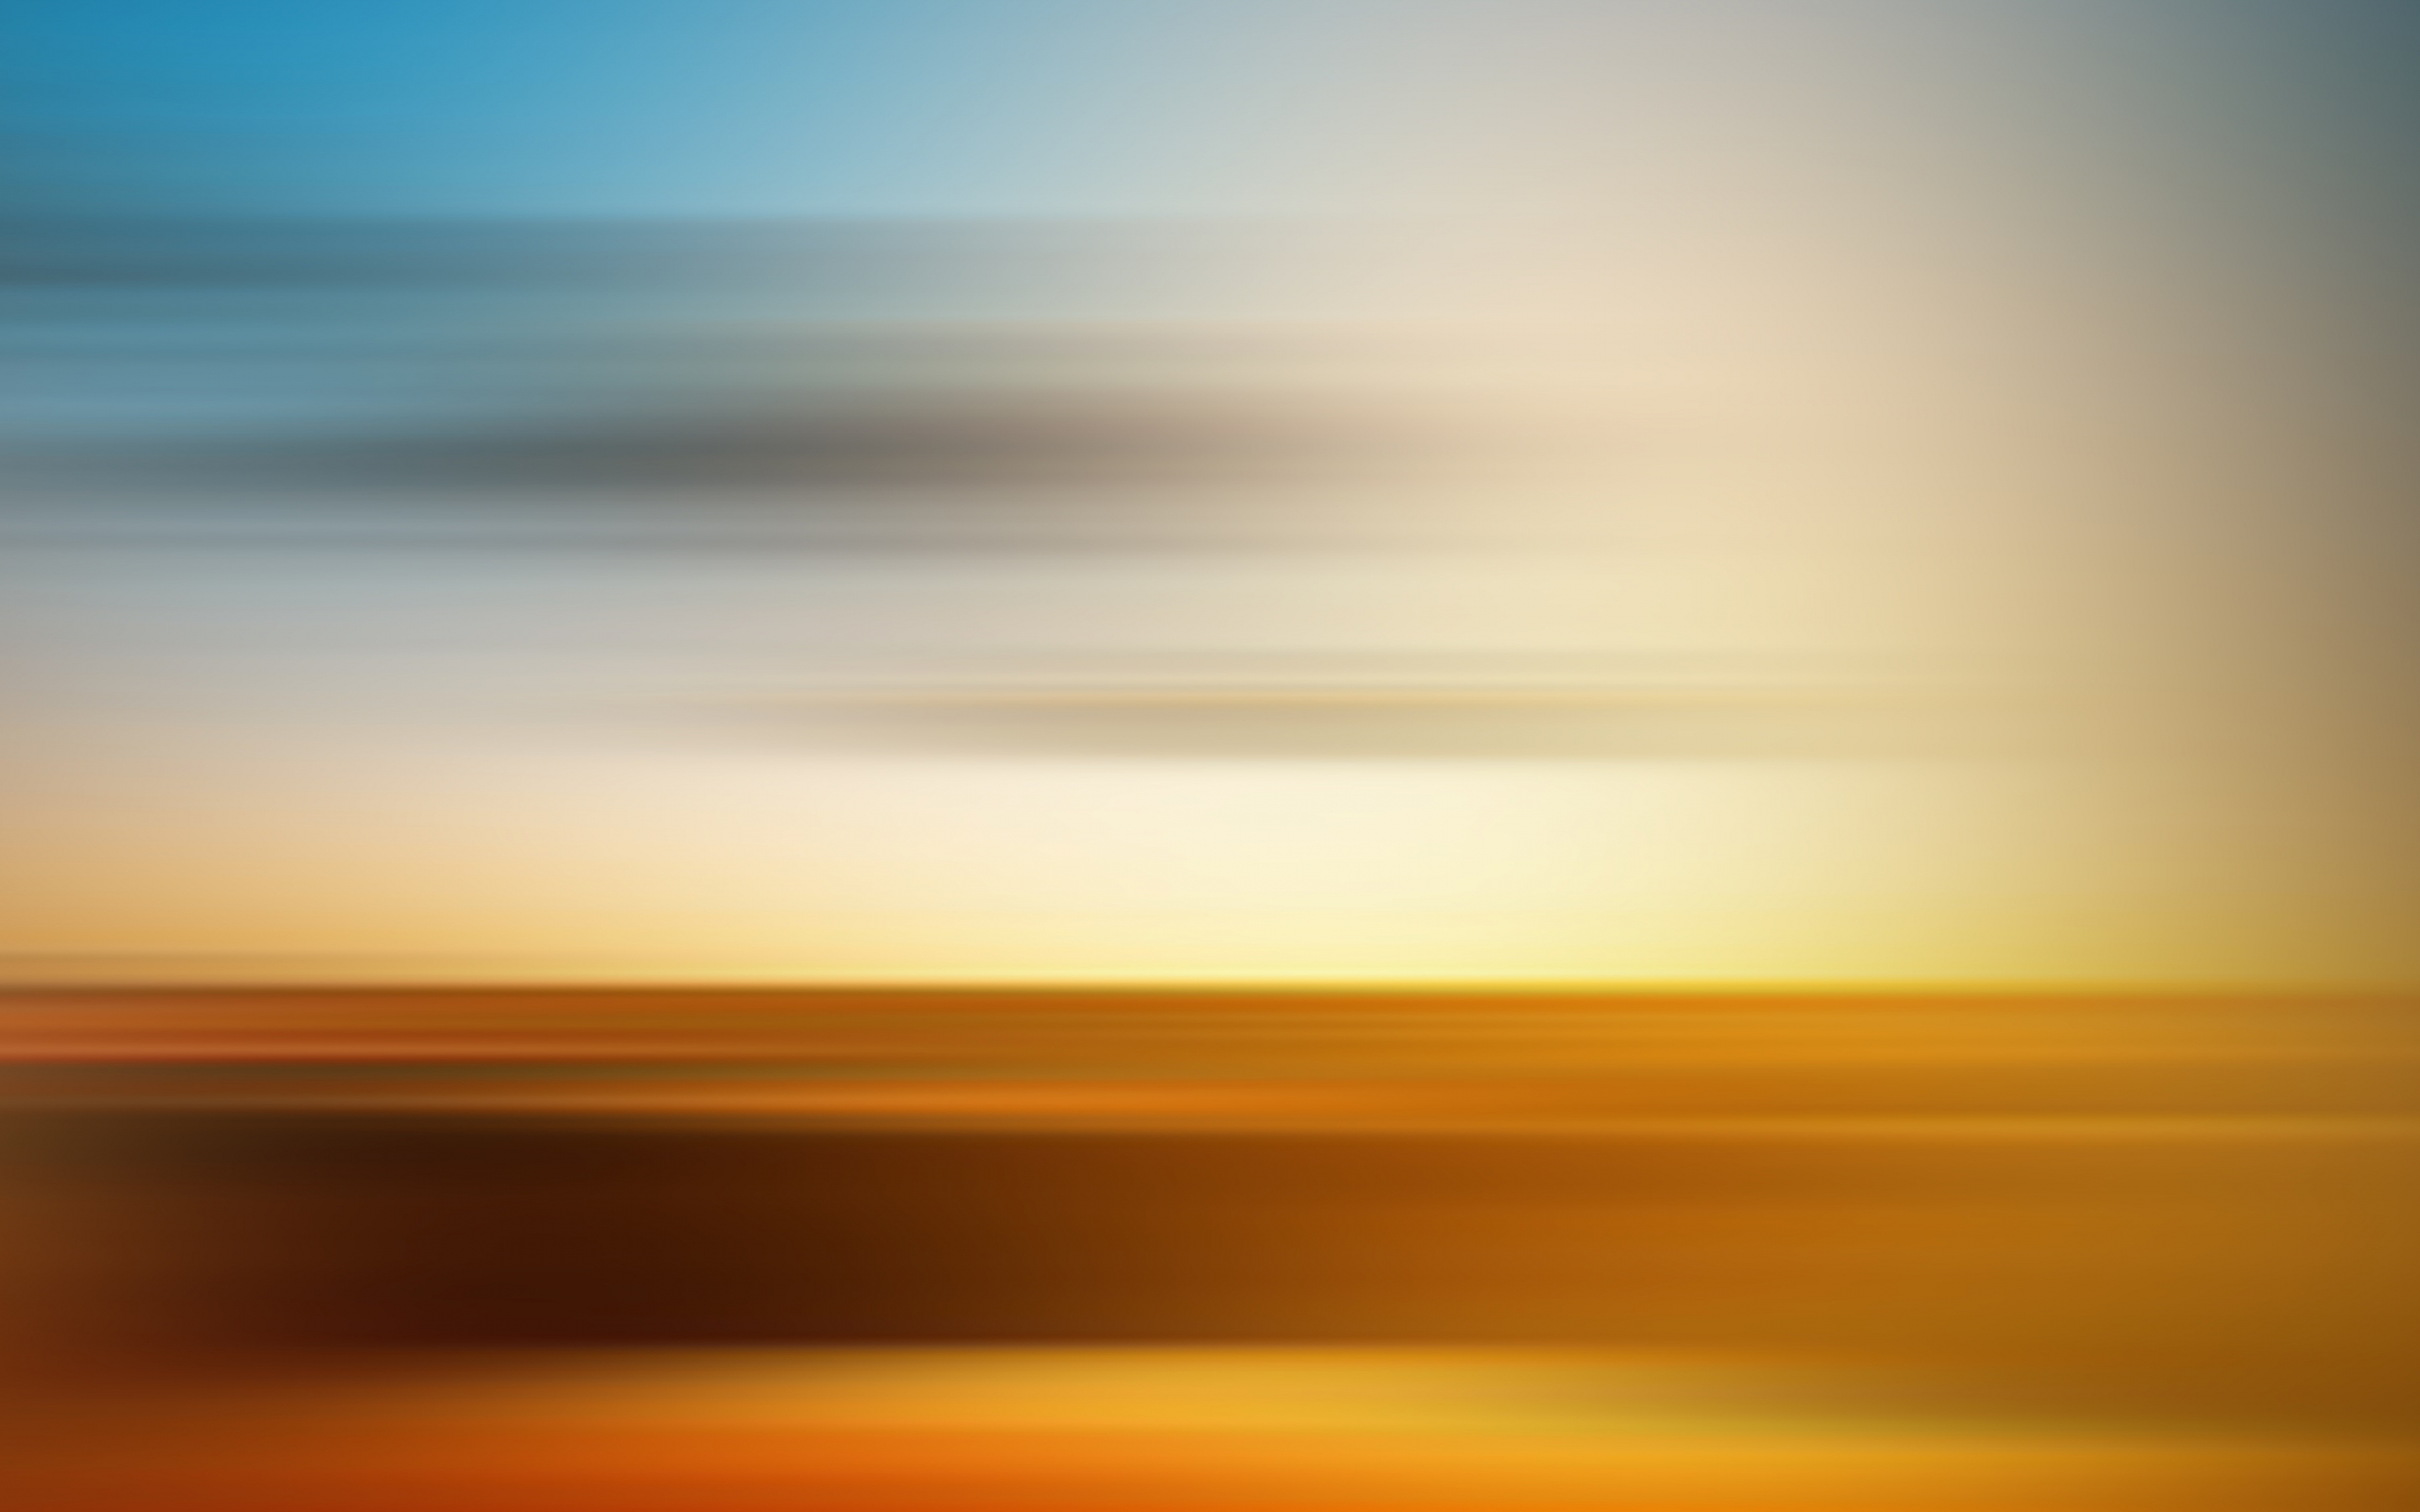 Desert, abstract, blur, skyline, 2880x1800 wallpaper